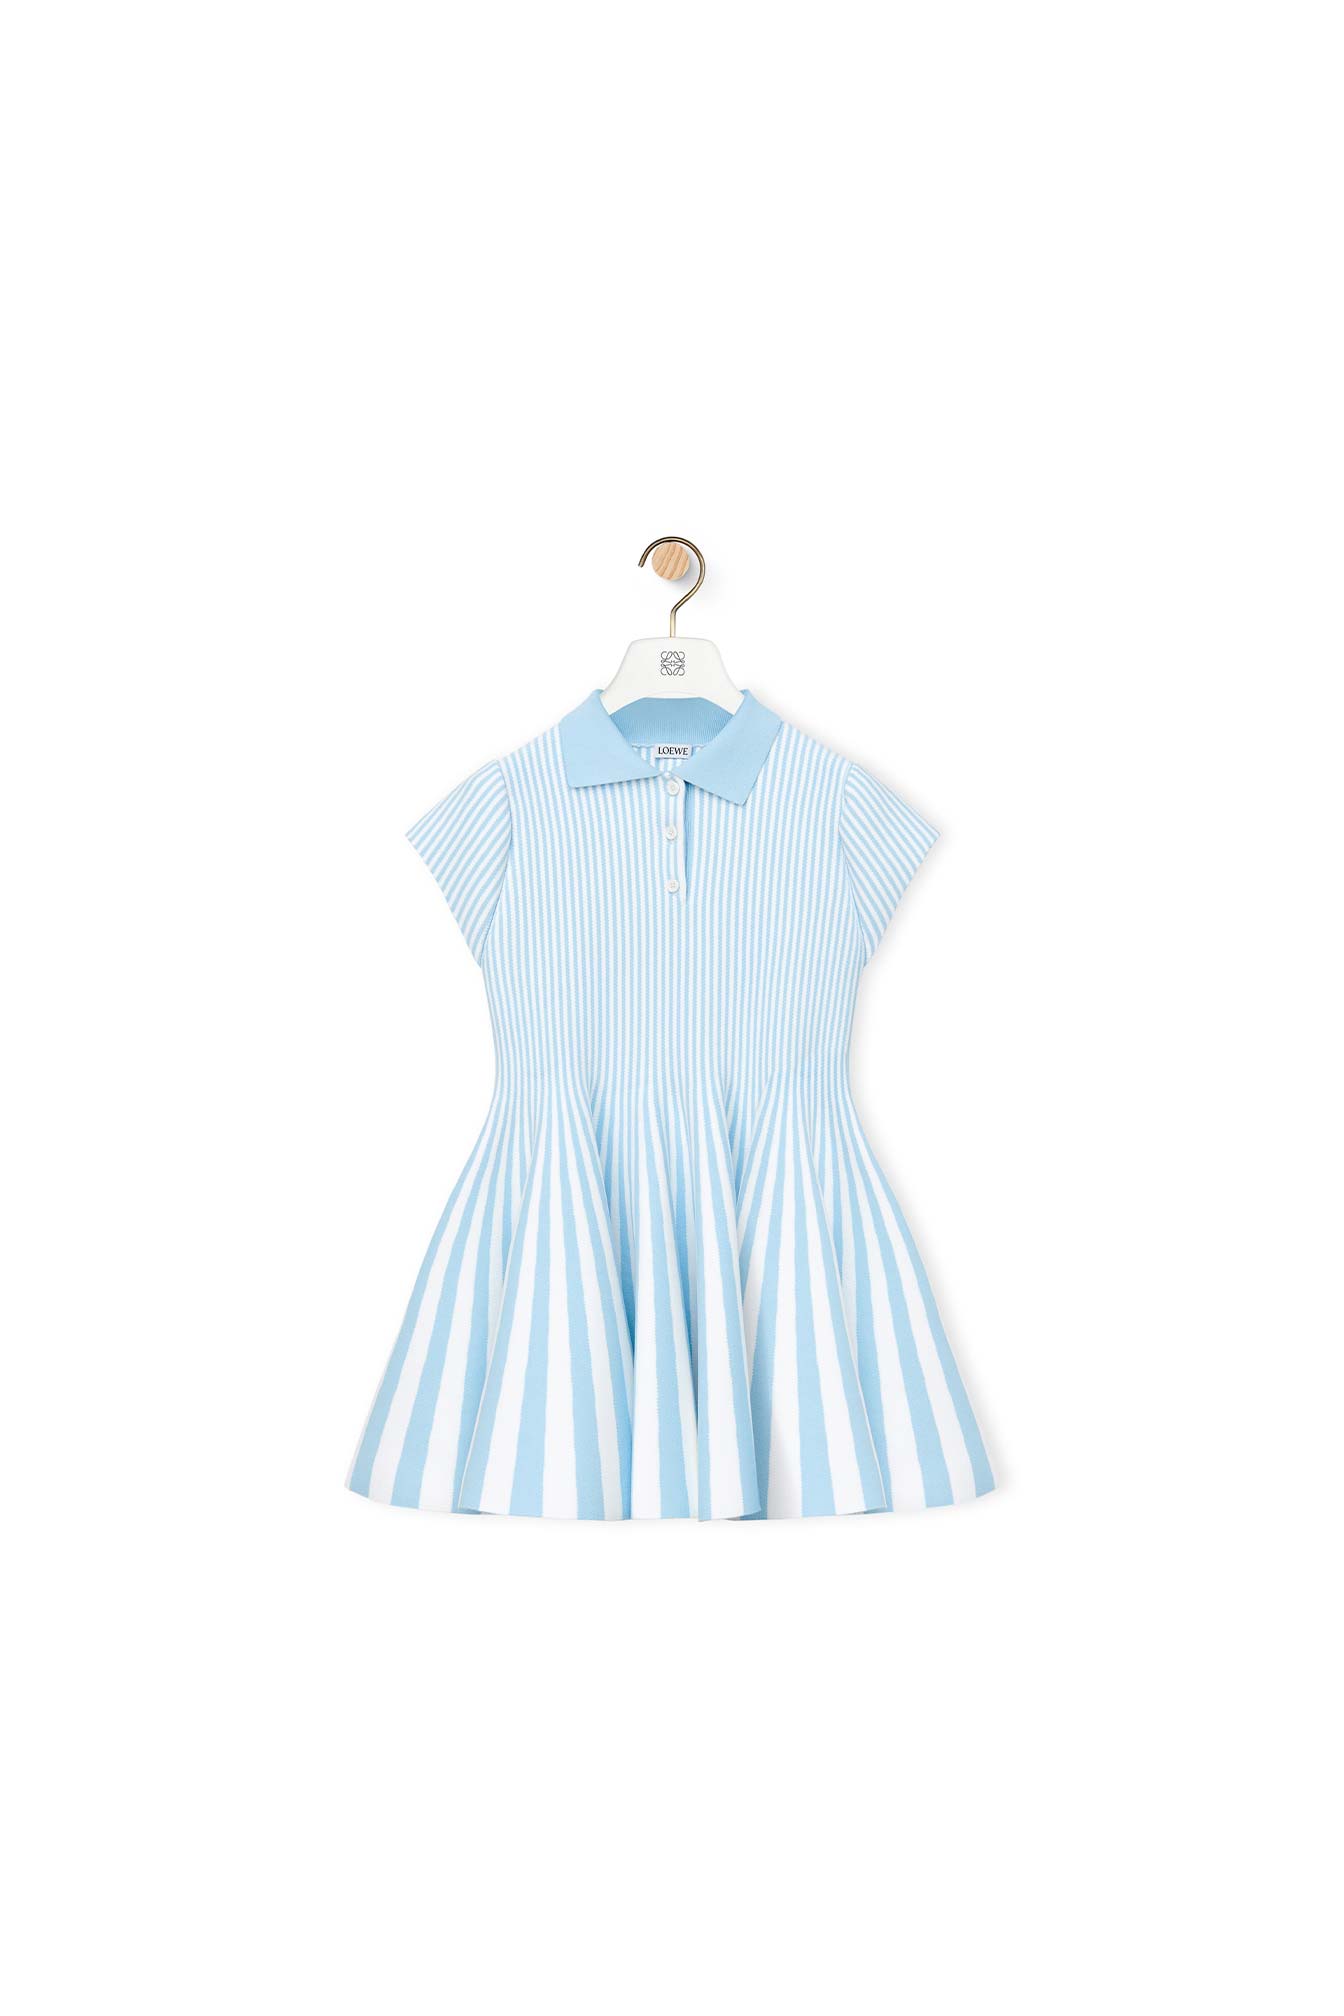 Stripe-Mini-Dress-01